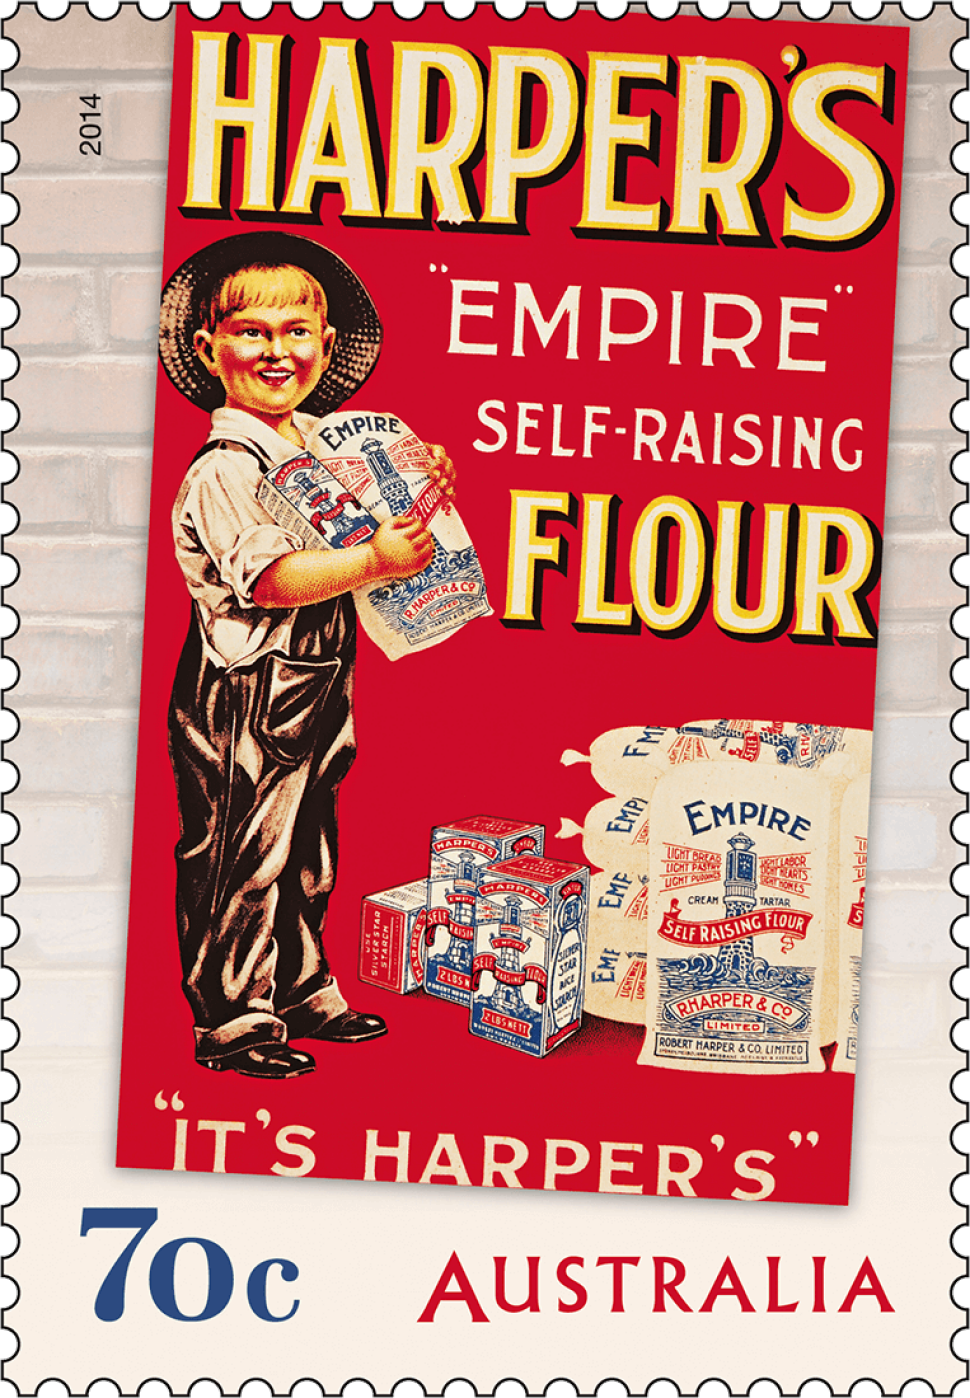 70c Harper’s Empire Self-Raising Flour stamp